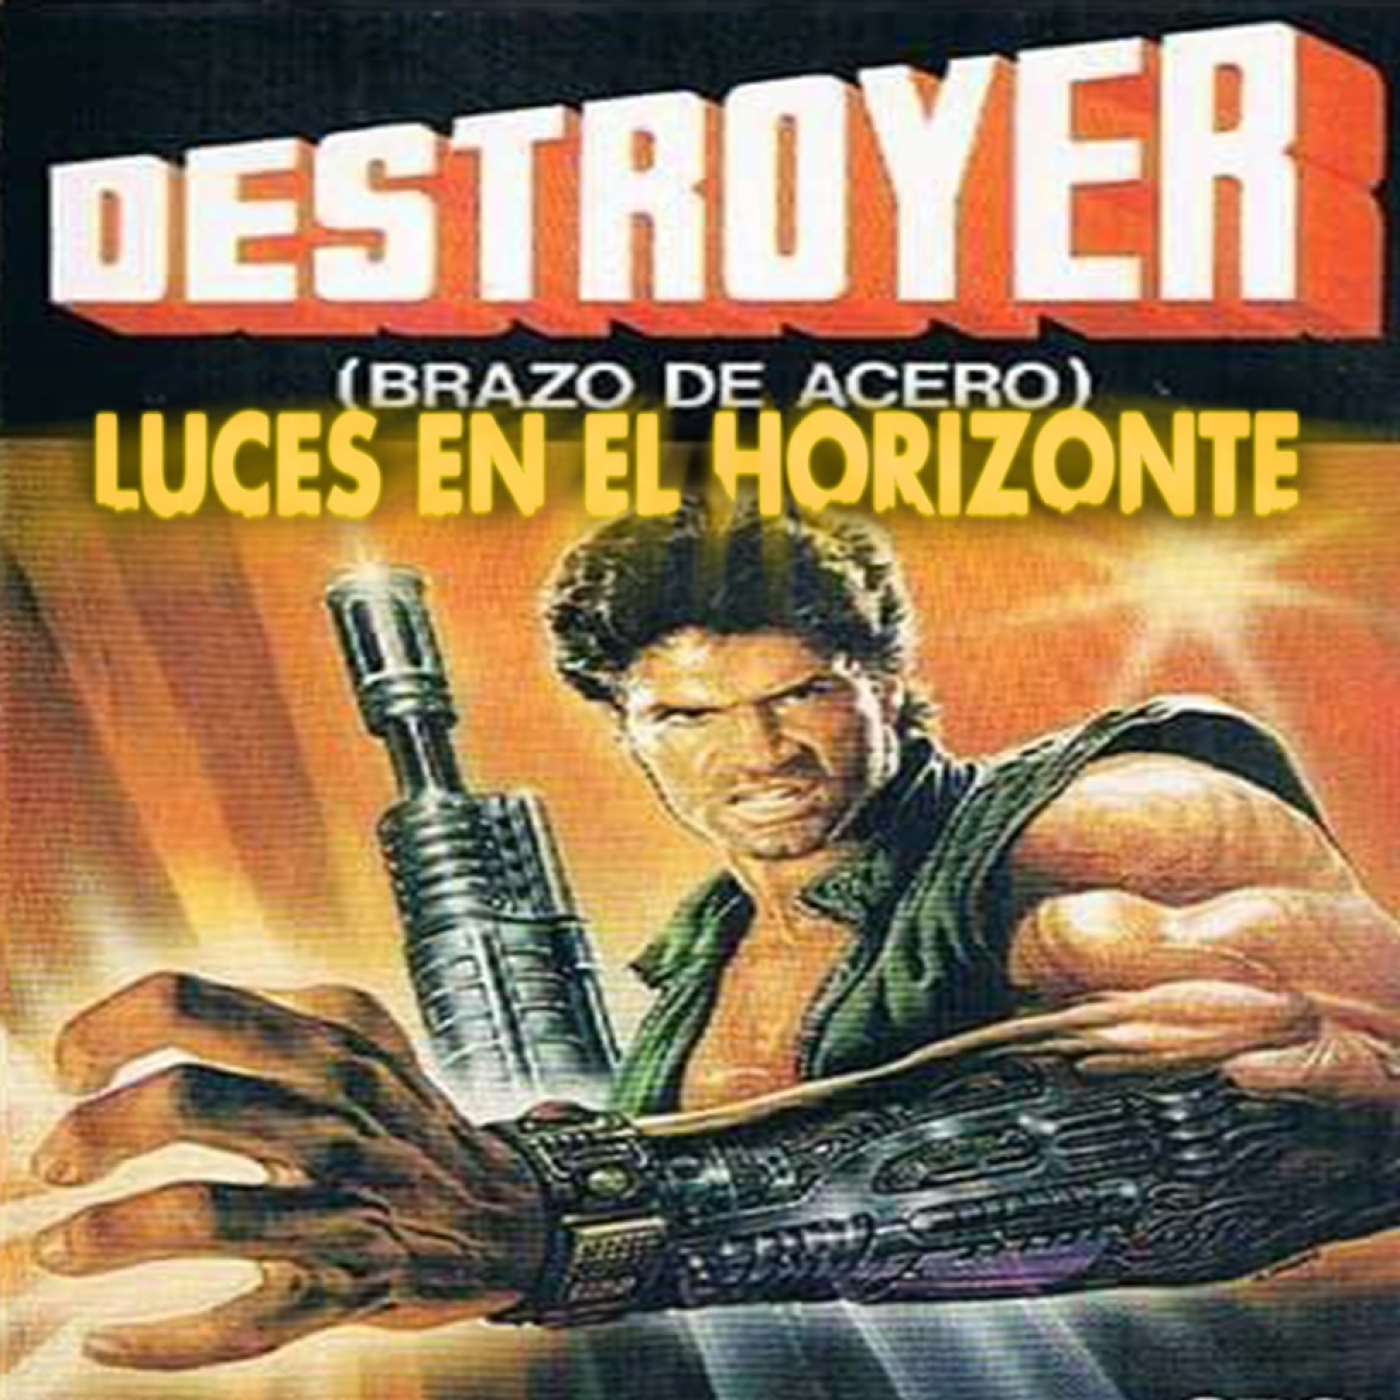 Destroyer (Brazo de acero) - Luces en el Horizonte - Episodio exclusivo para mecenas